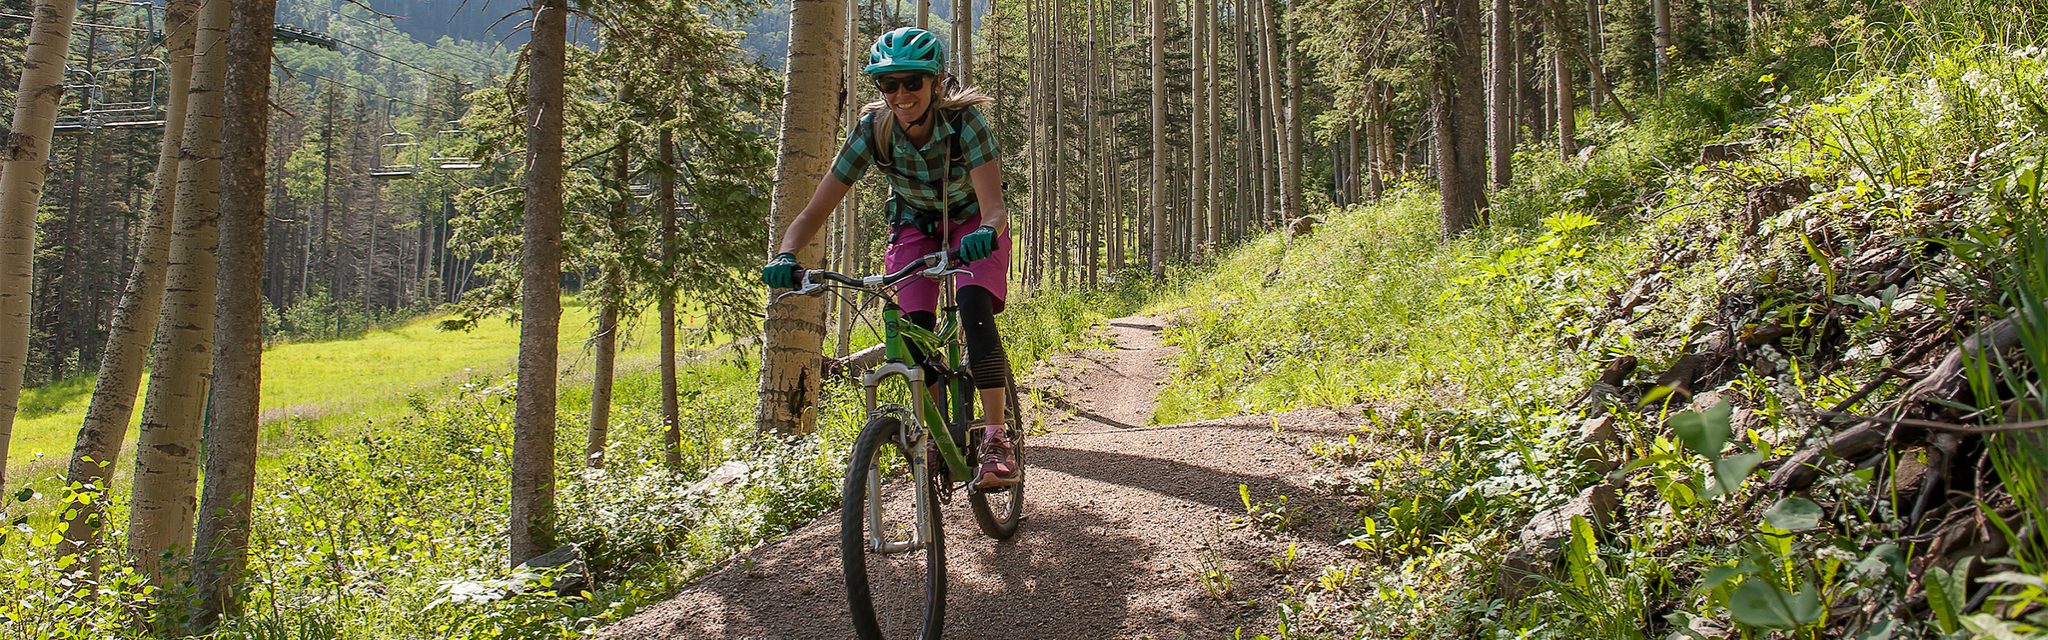 A woman rides a mountain bike down a trail through a grove of aspens